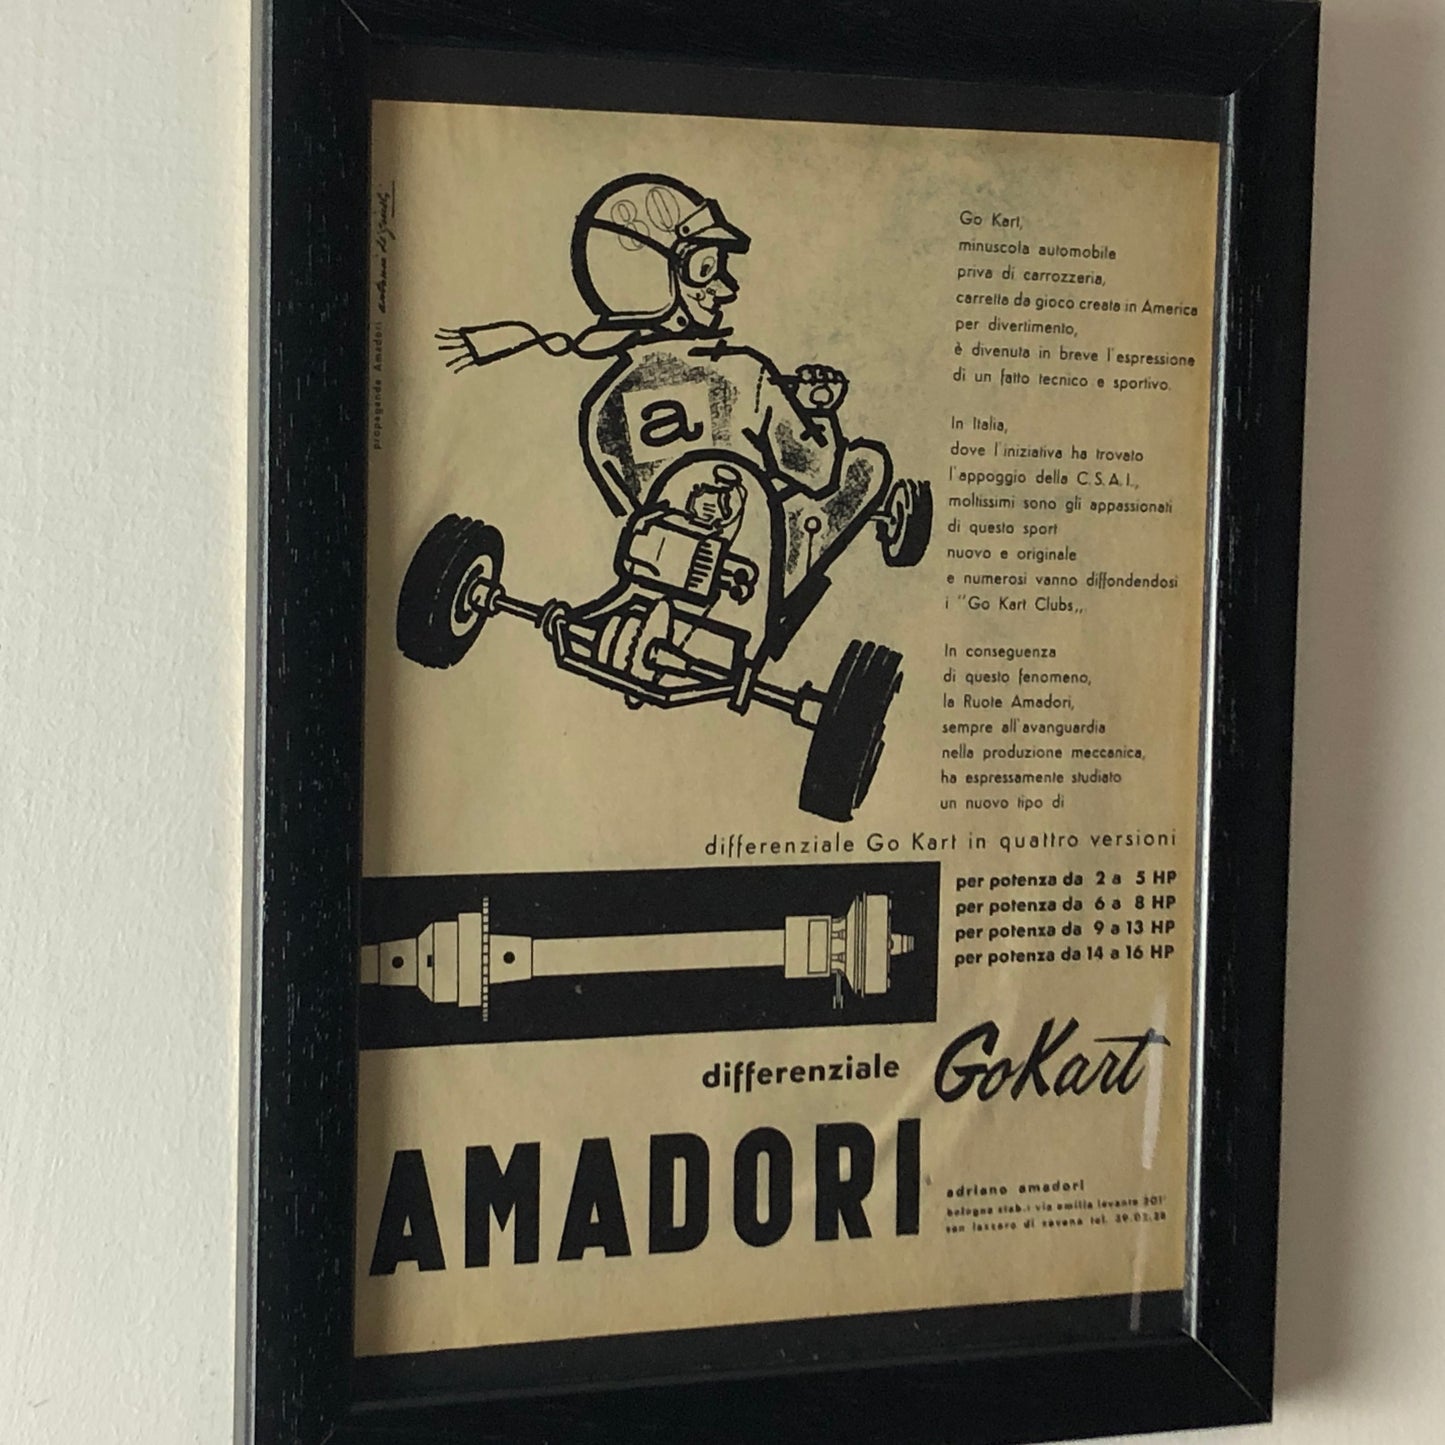 Amadori, Pubblicità Anno 1960 Differenziale per Go Kart Amadori Disegnata da Antonio de Giusti